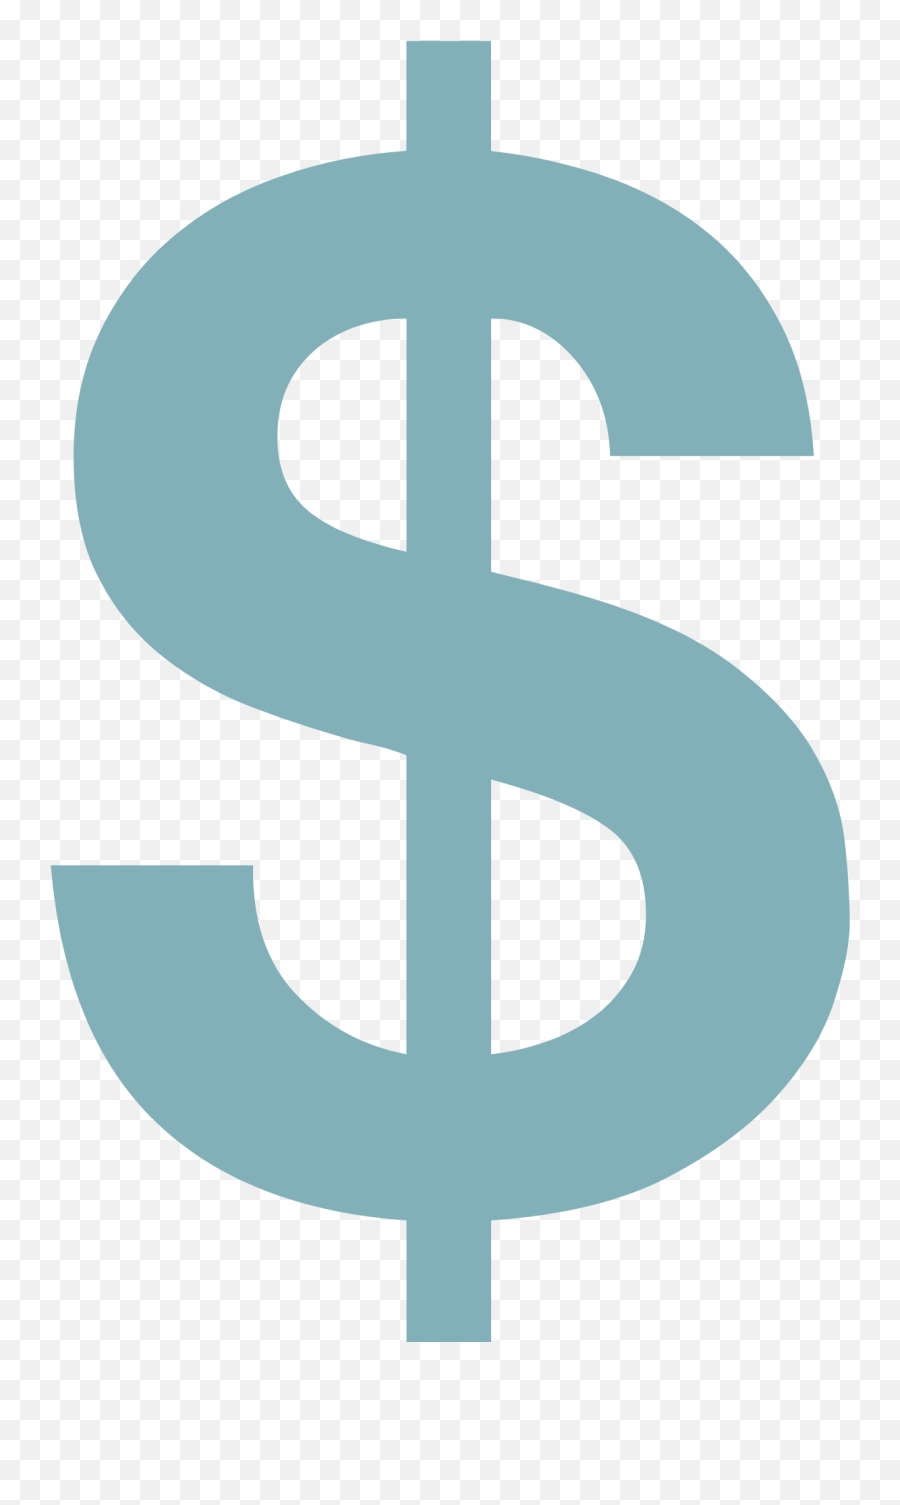 How To Set Up A Fund U2014 Porter County Community Foundation Emoji,Dollar Signs Emoji